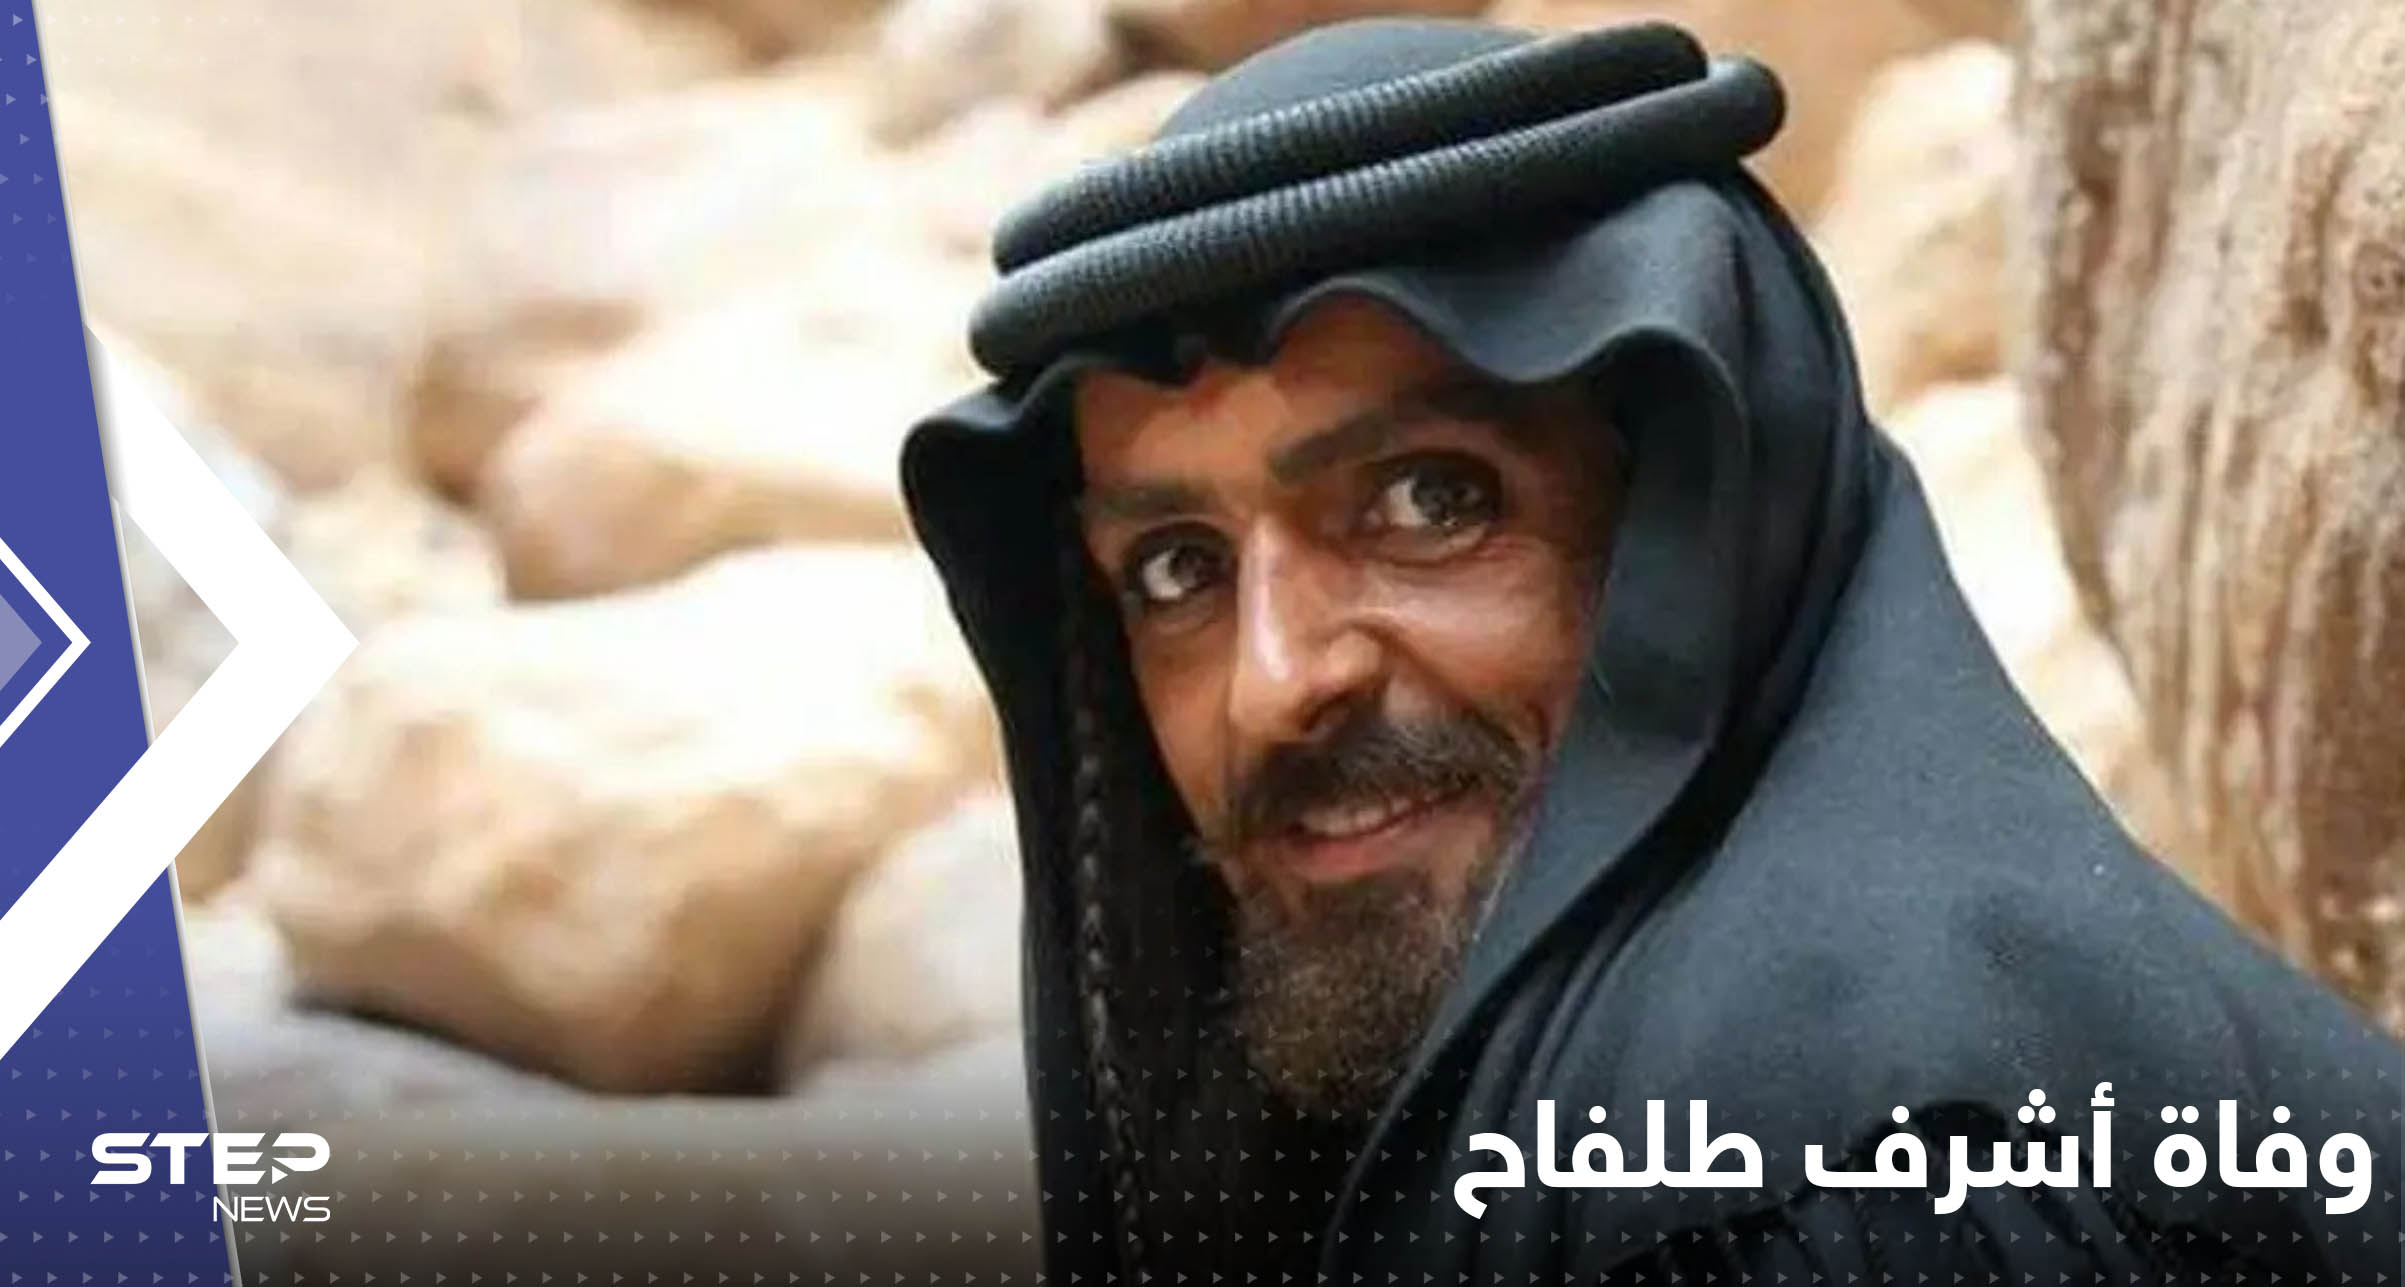 وفاة أشرف طلفاح بطل مسلسل "الحسن والحسين" الأردني في مصر وتقارير تكشف تفاصيل الاعتداء